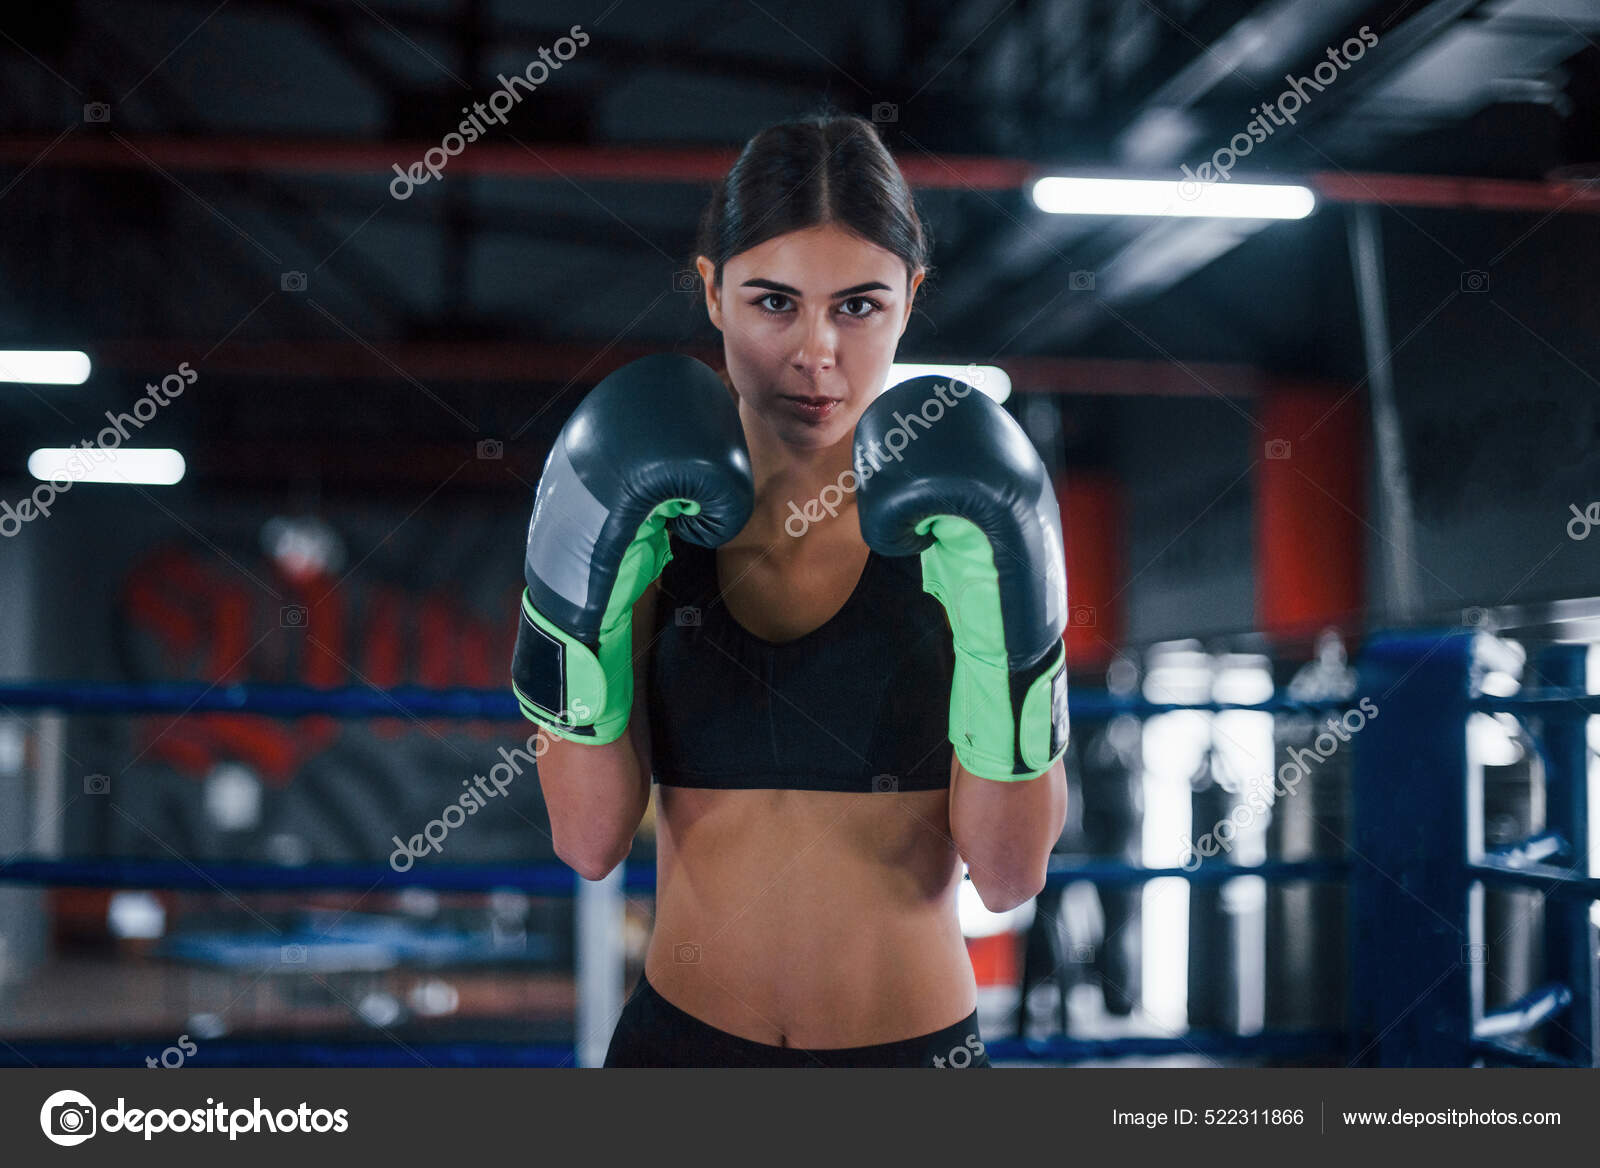 Insignificante Gimnasta Bailarín Mujer Joven Ropa Deportiva Está Ring Boxeo Teniendo Día Ejercicio:  fotografía de stock © myronstandret #522311866 | Depositphotos